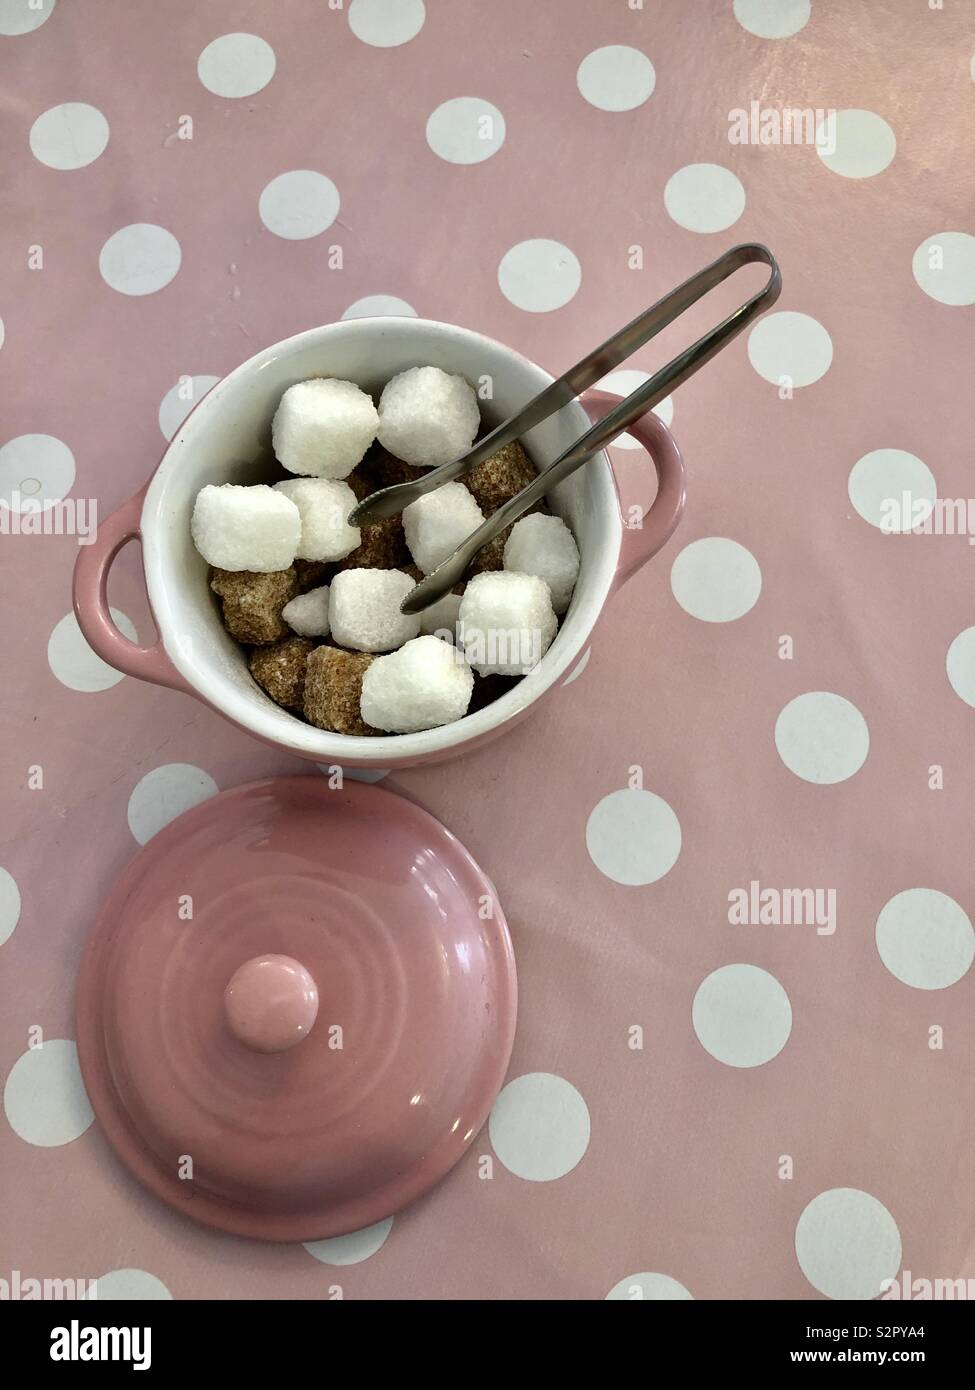 Marrone e bianco cubetti di zucchero e pinze da zucchero in una ciotola rosa su una rosa e bianco sfondo maculato Foto Stock